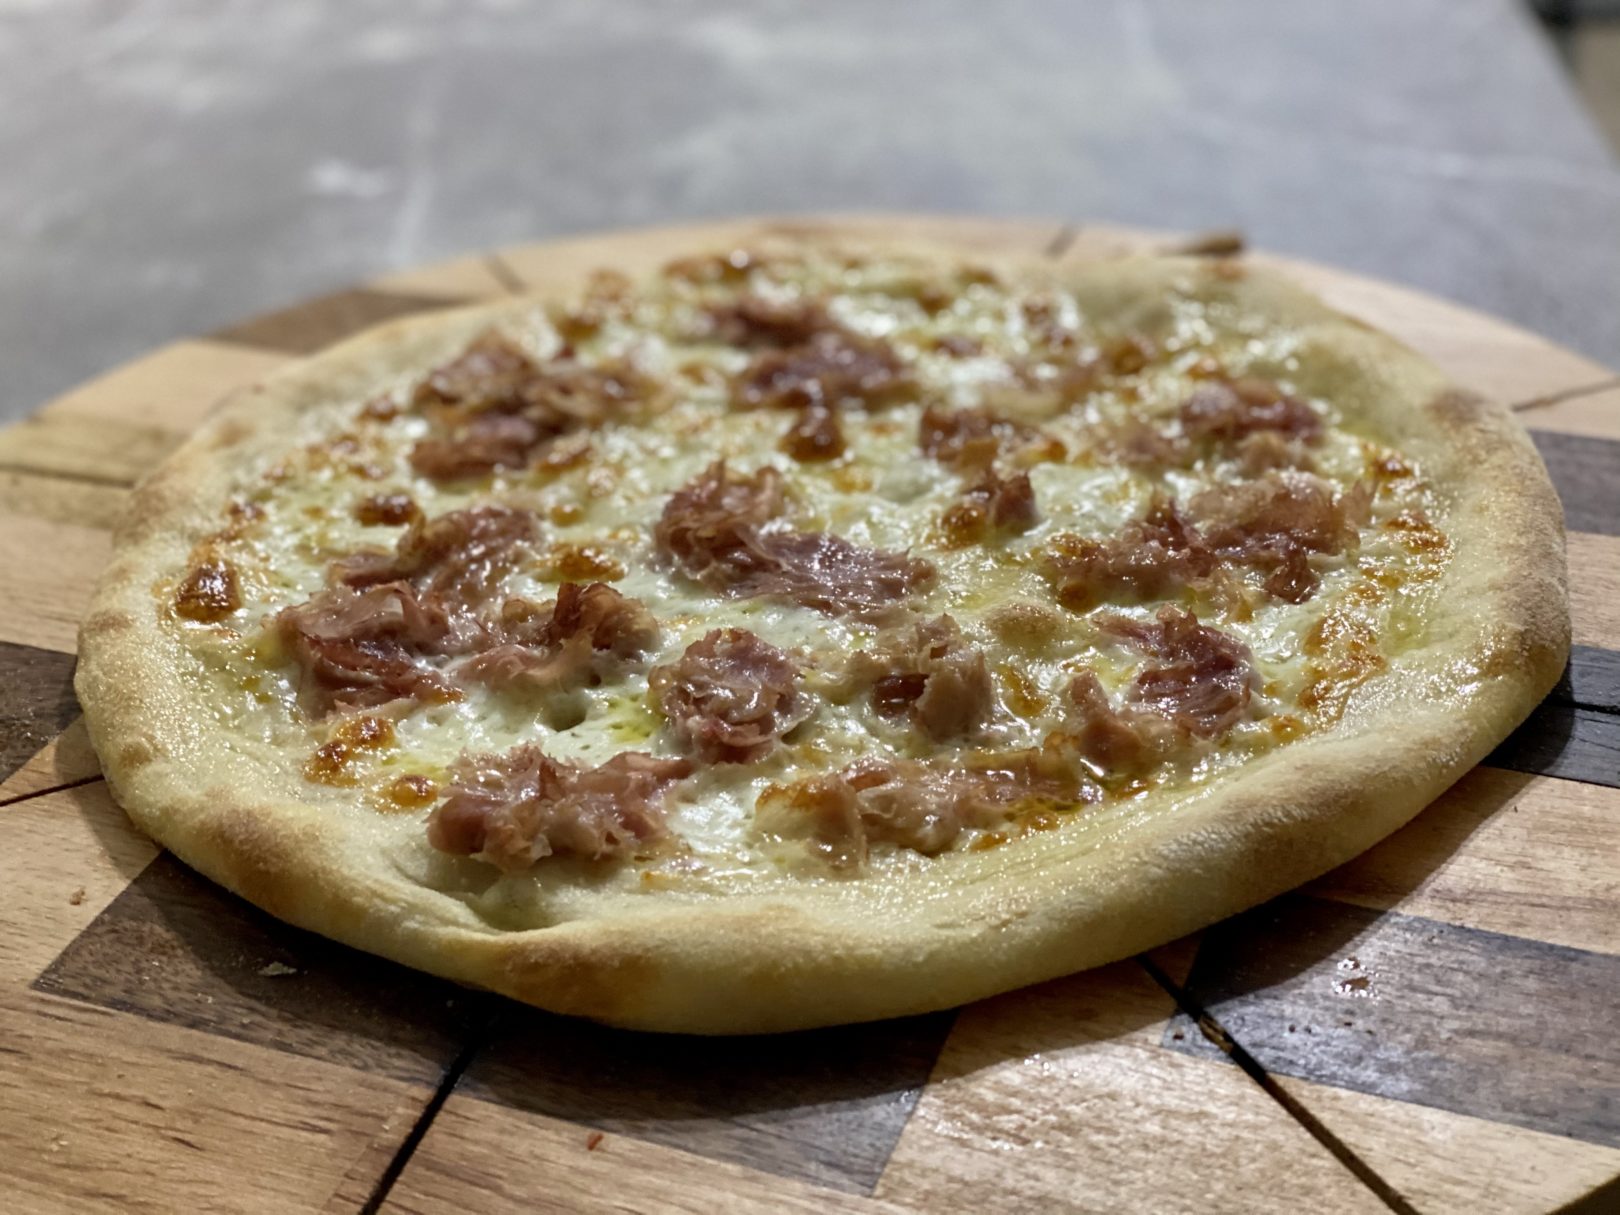 Pizza napoletana (nel forno di casa) Cocendolibando